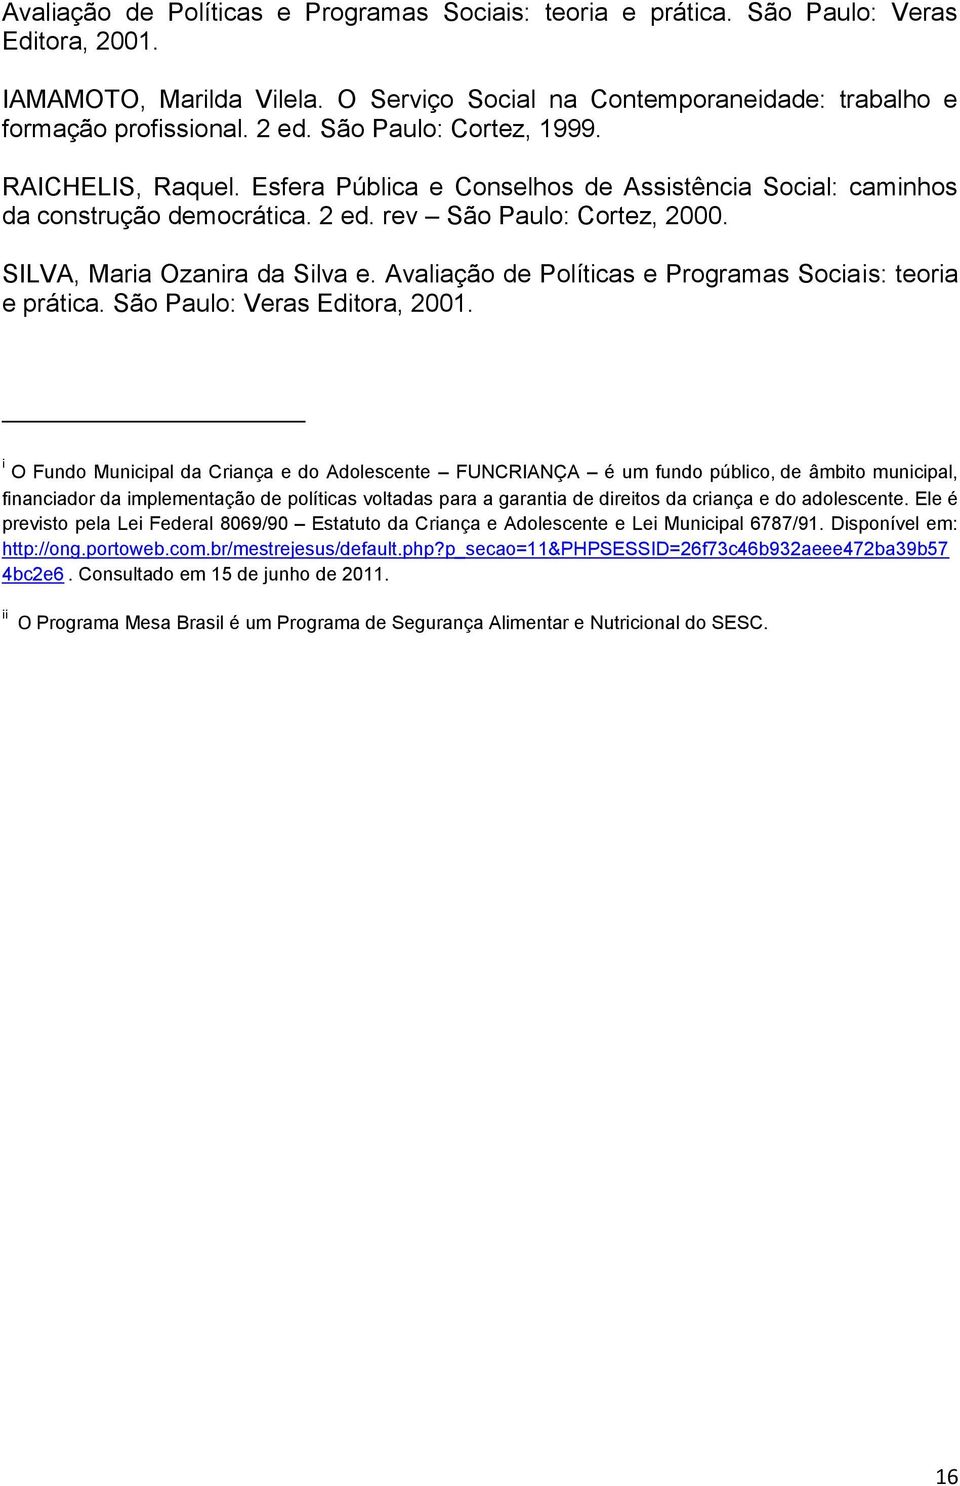 Avaliação de Políticas e Programas Sociais: teoria e prática. São Paulo: Veras Editora, 2001.